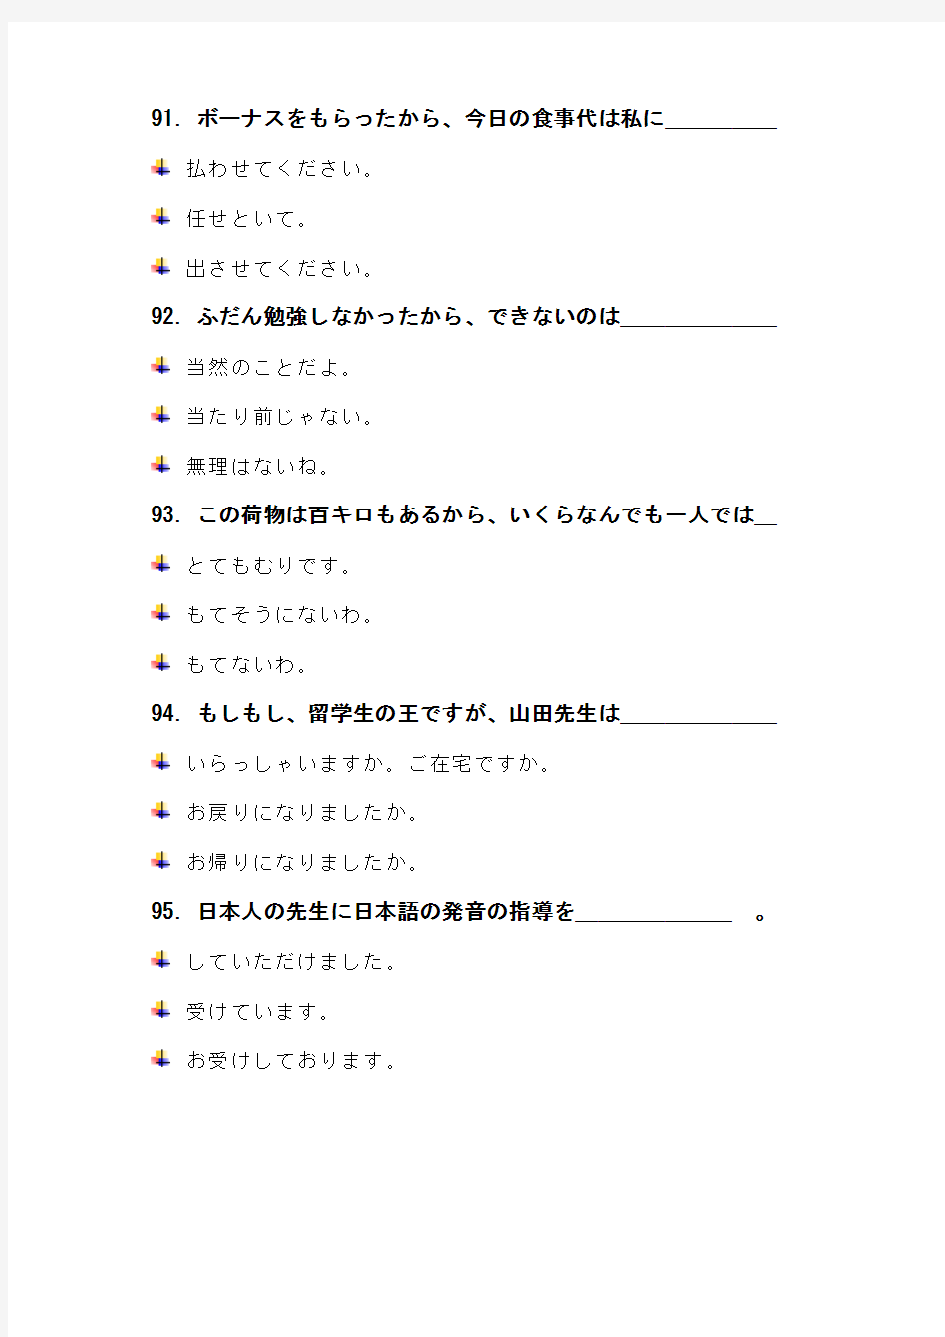 大学日语四级专业考试 完形填空及答案 2005年